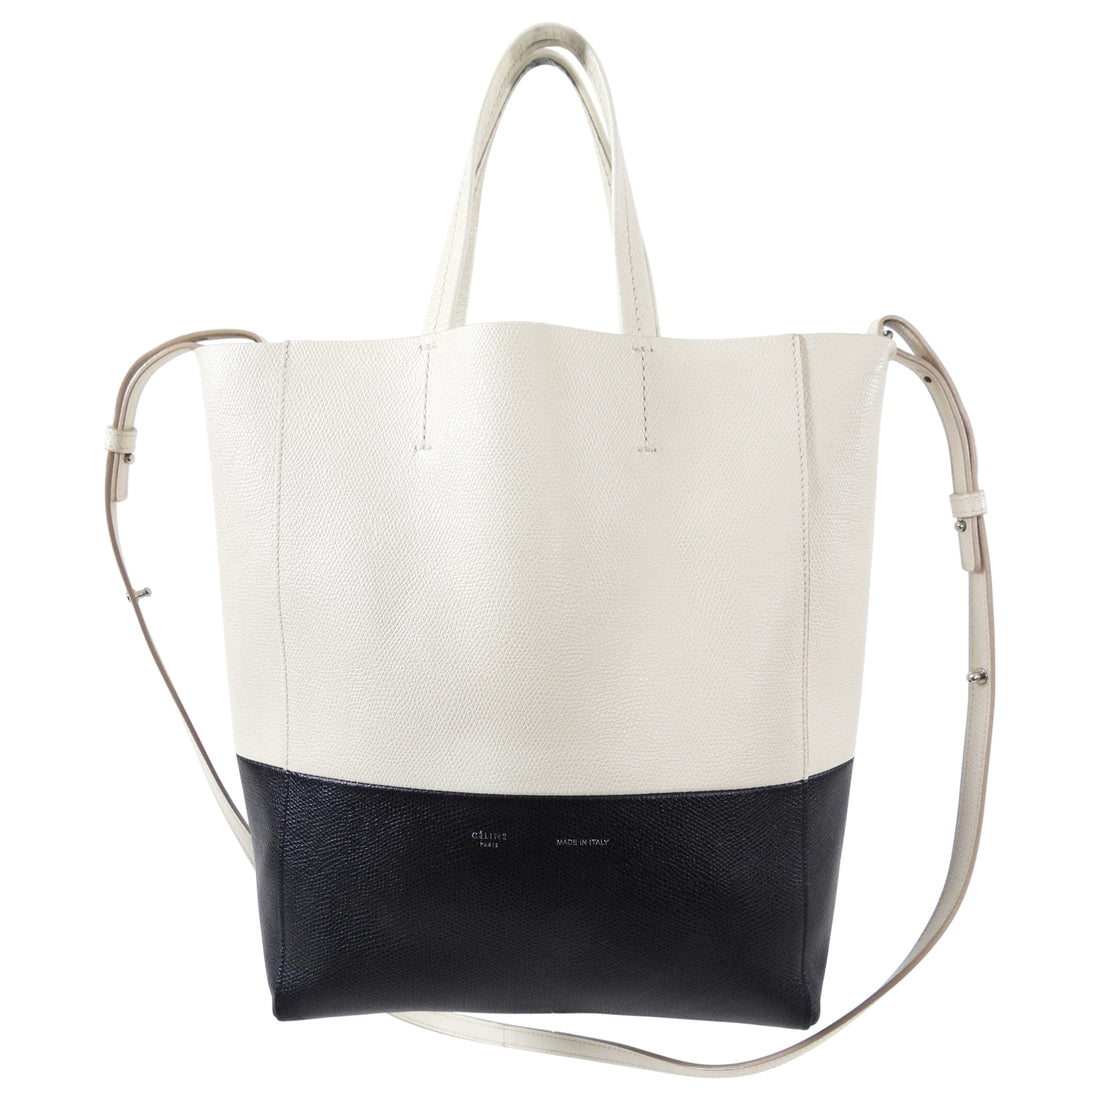 Celine Bicolor Vertical Cabas Small Tote Bag – I MISS YOU VINTAGE